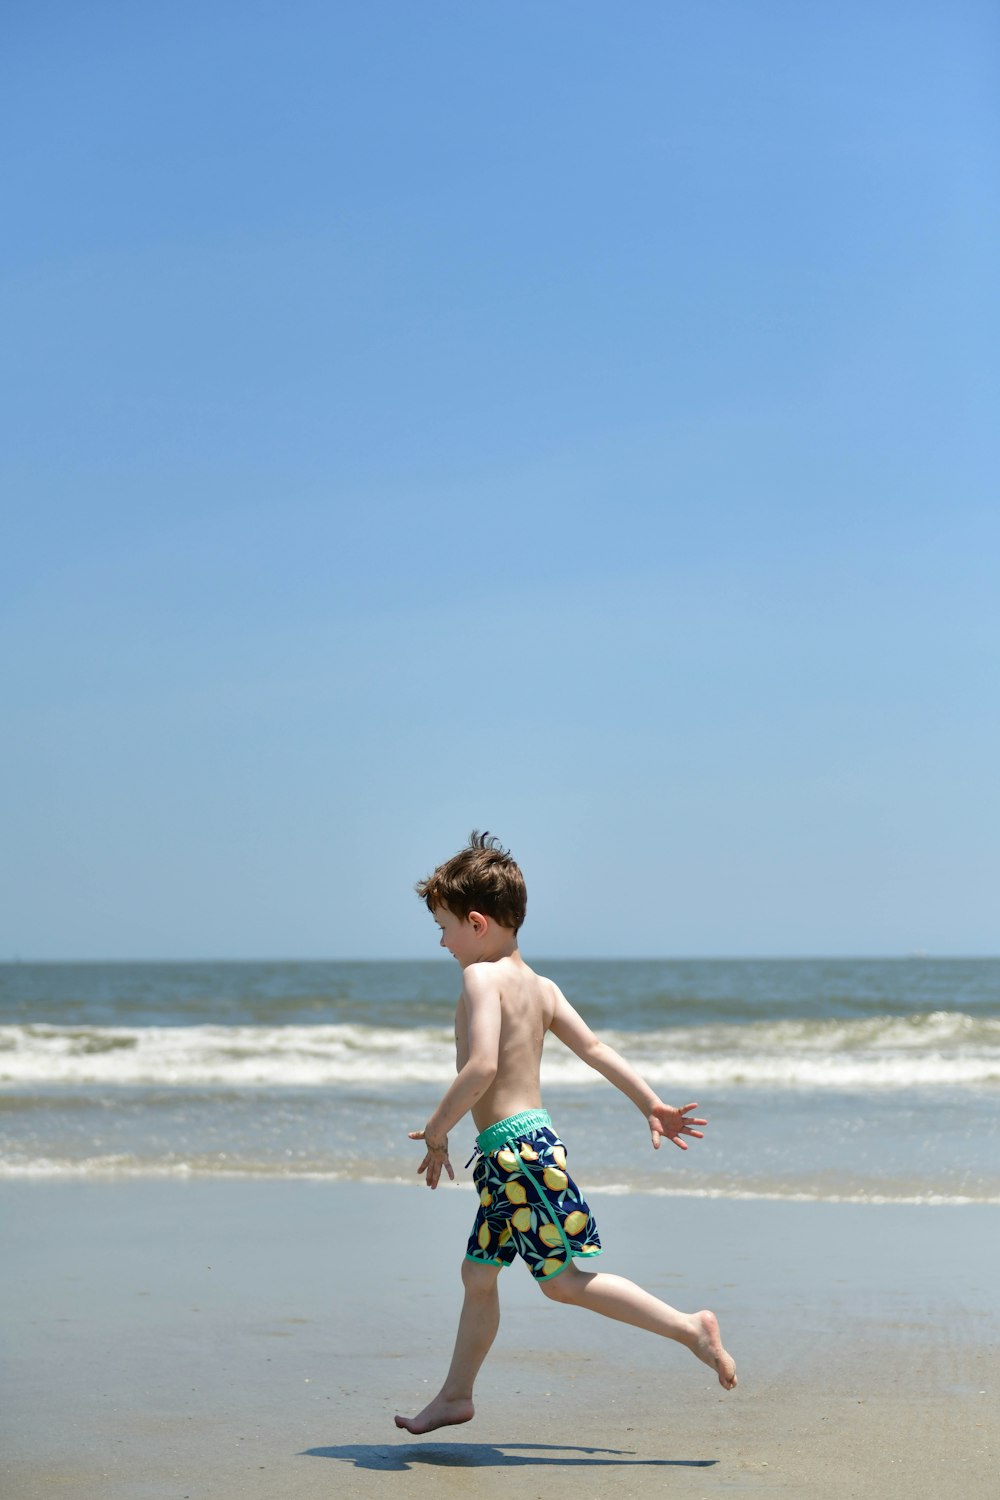 フリスビーを持ってビーチを走る少年